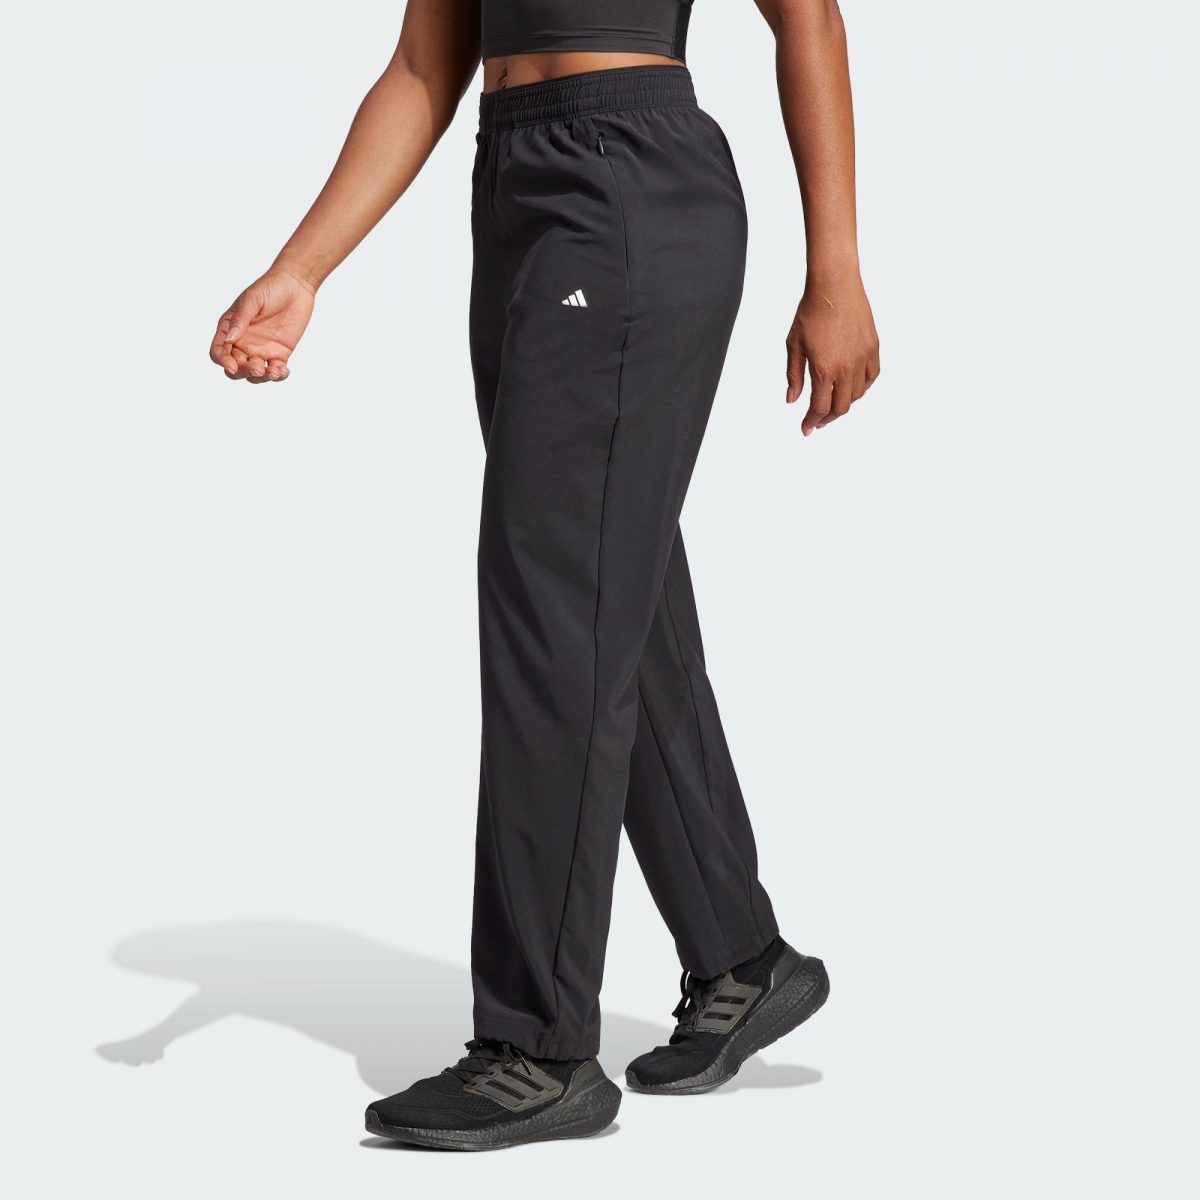 Женские брюки adidas TRAINING PANTS черные фото